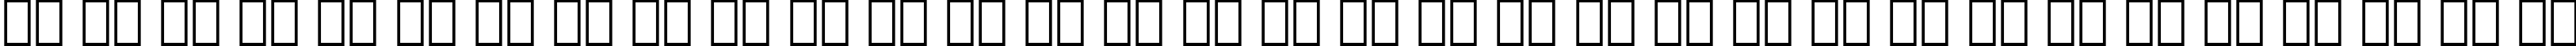 Пример написания русского алфавита шрифтом Avant Garde Medium Oblique BT